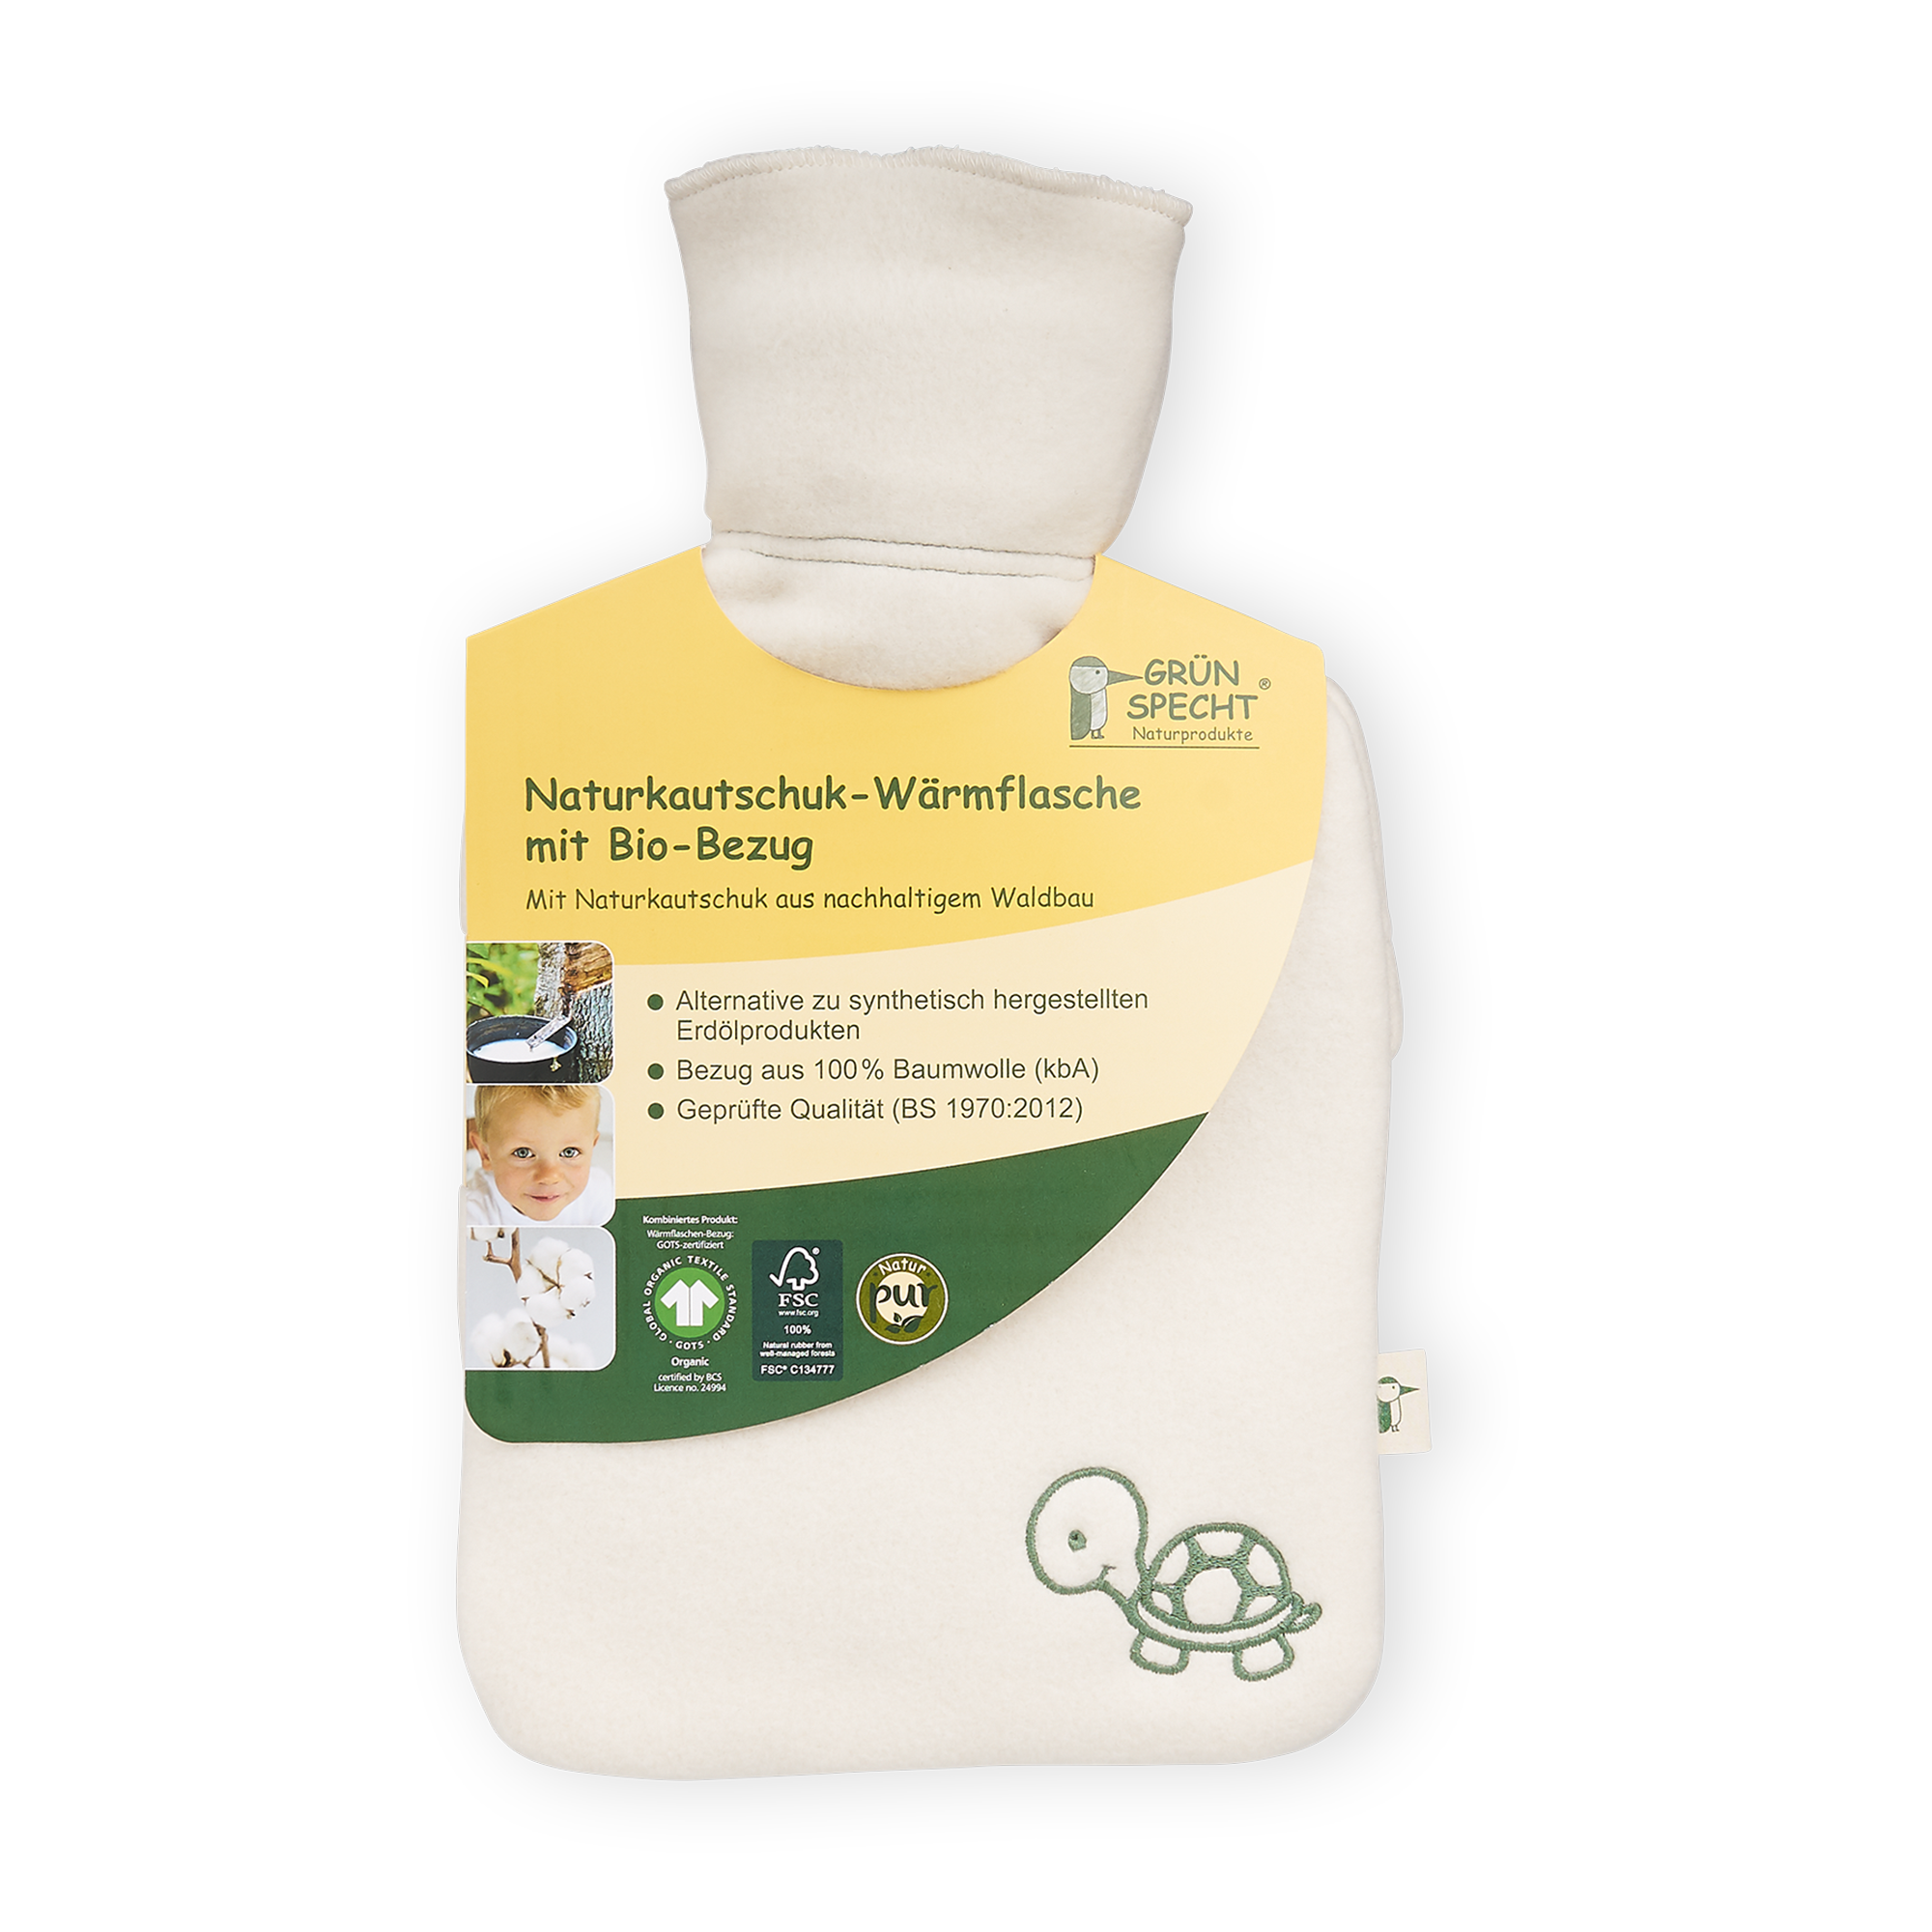 Naturkautschuk Wärmflasche klein mit Bio-Bezug GRÜNSPECHT Weiß Weiß 2000584466009 1